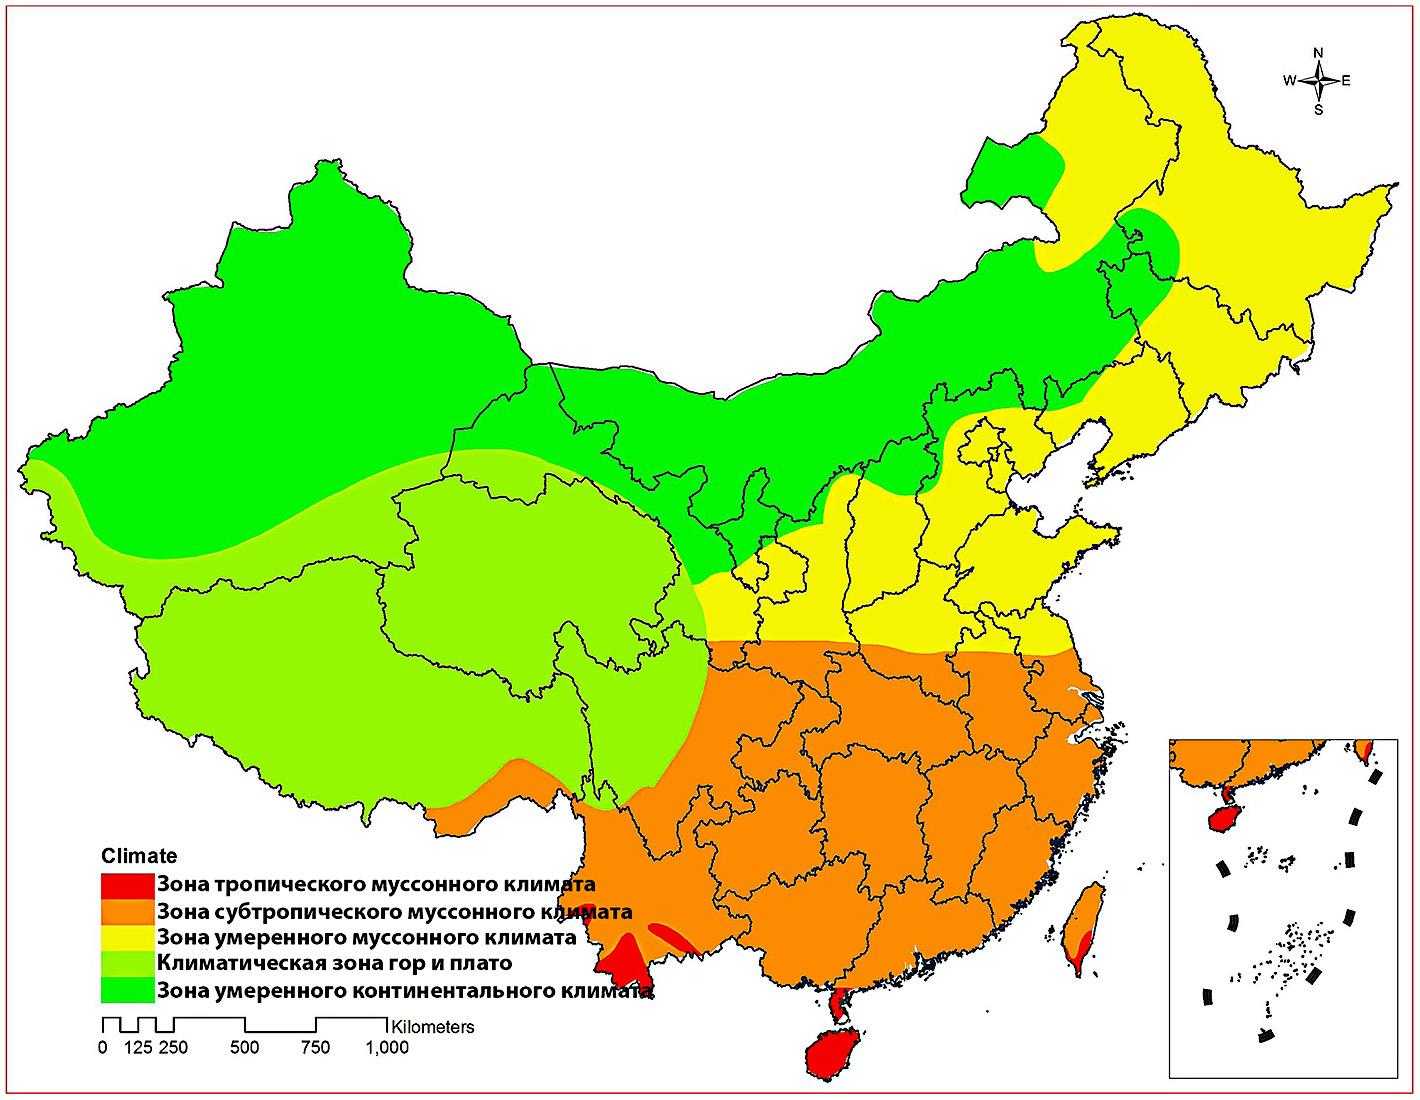 Растительный мир Китая отличается чрезвычайным богатством и разнообразием: здесь насчитывается около 20 семейств и более 300 родов растений, не говоря уже об огромном числе видов